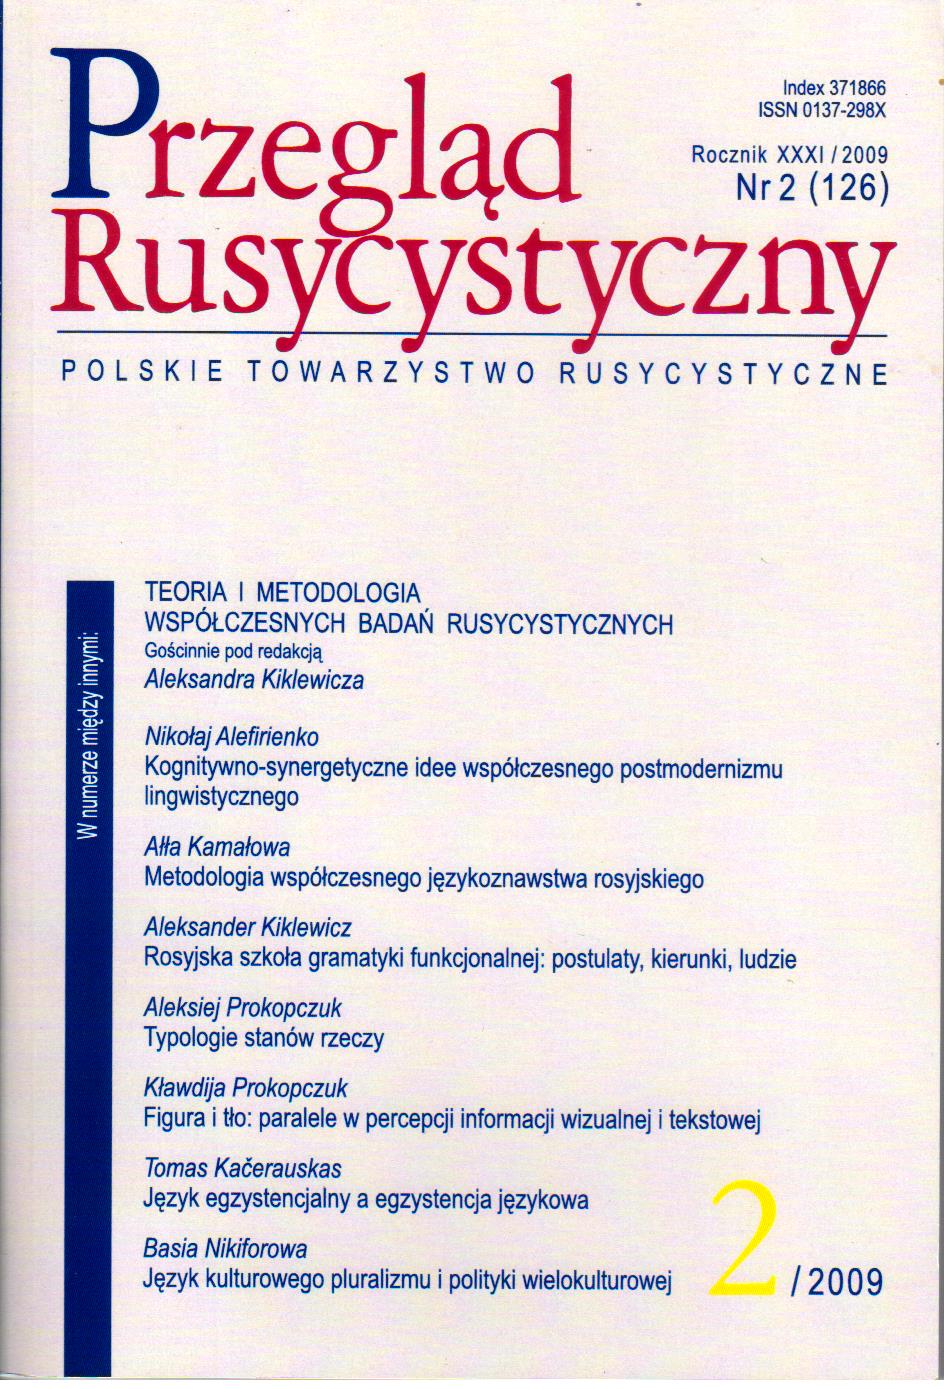 Rzeczowniki odczasownikowe z formantem zerowym w przyczasownikowej pozycji w tekstach naukowych języka polskiego i rosyjskiego